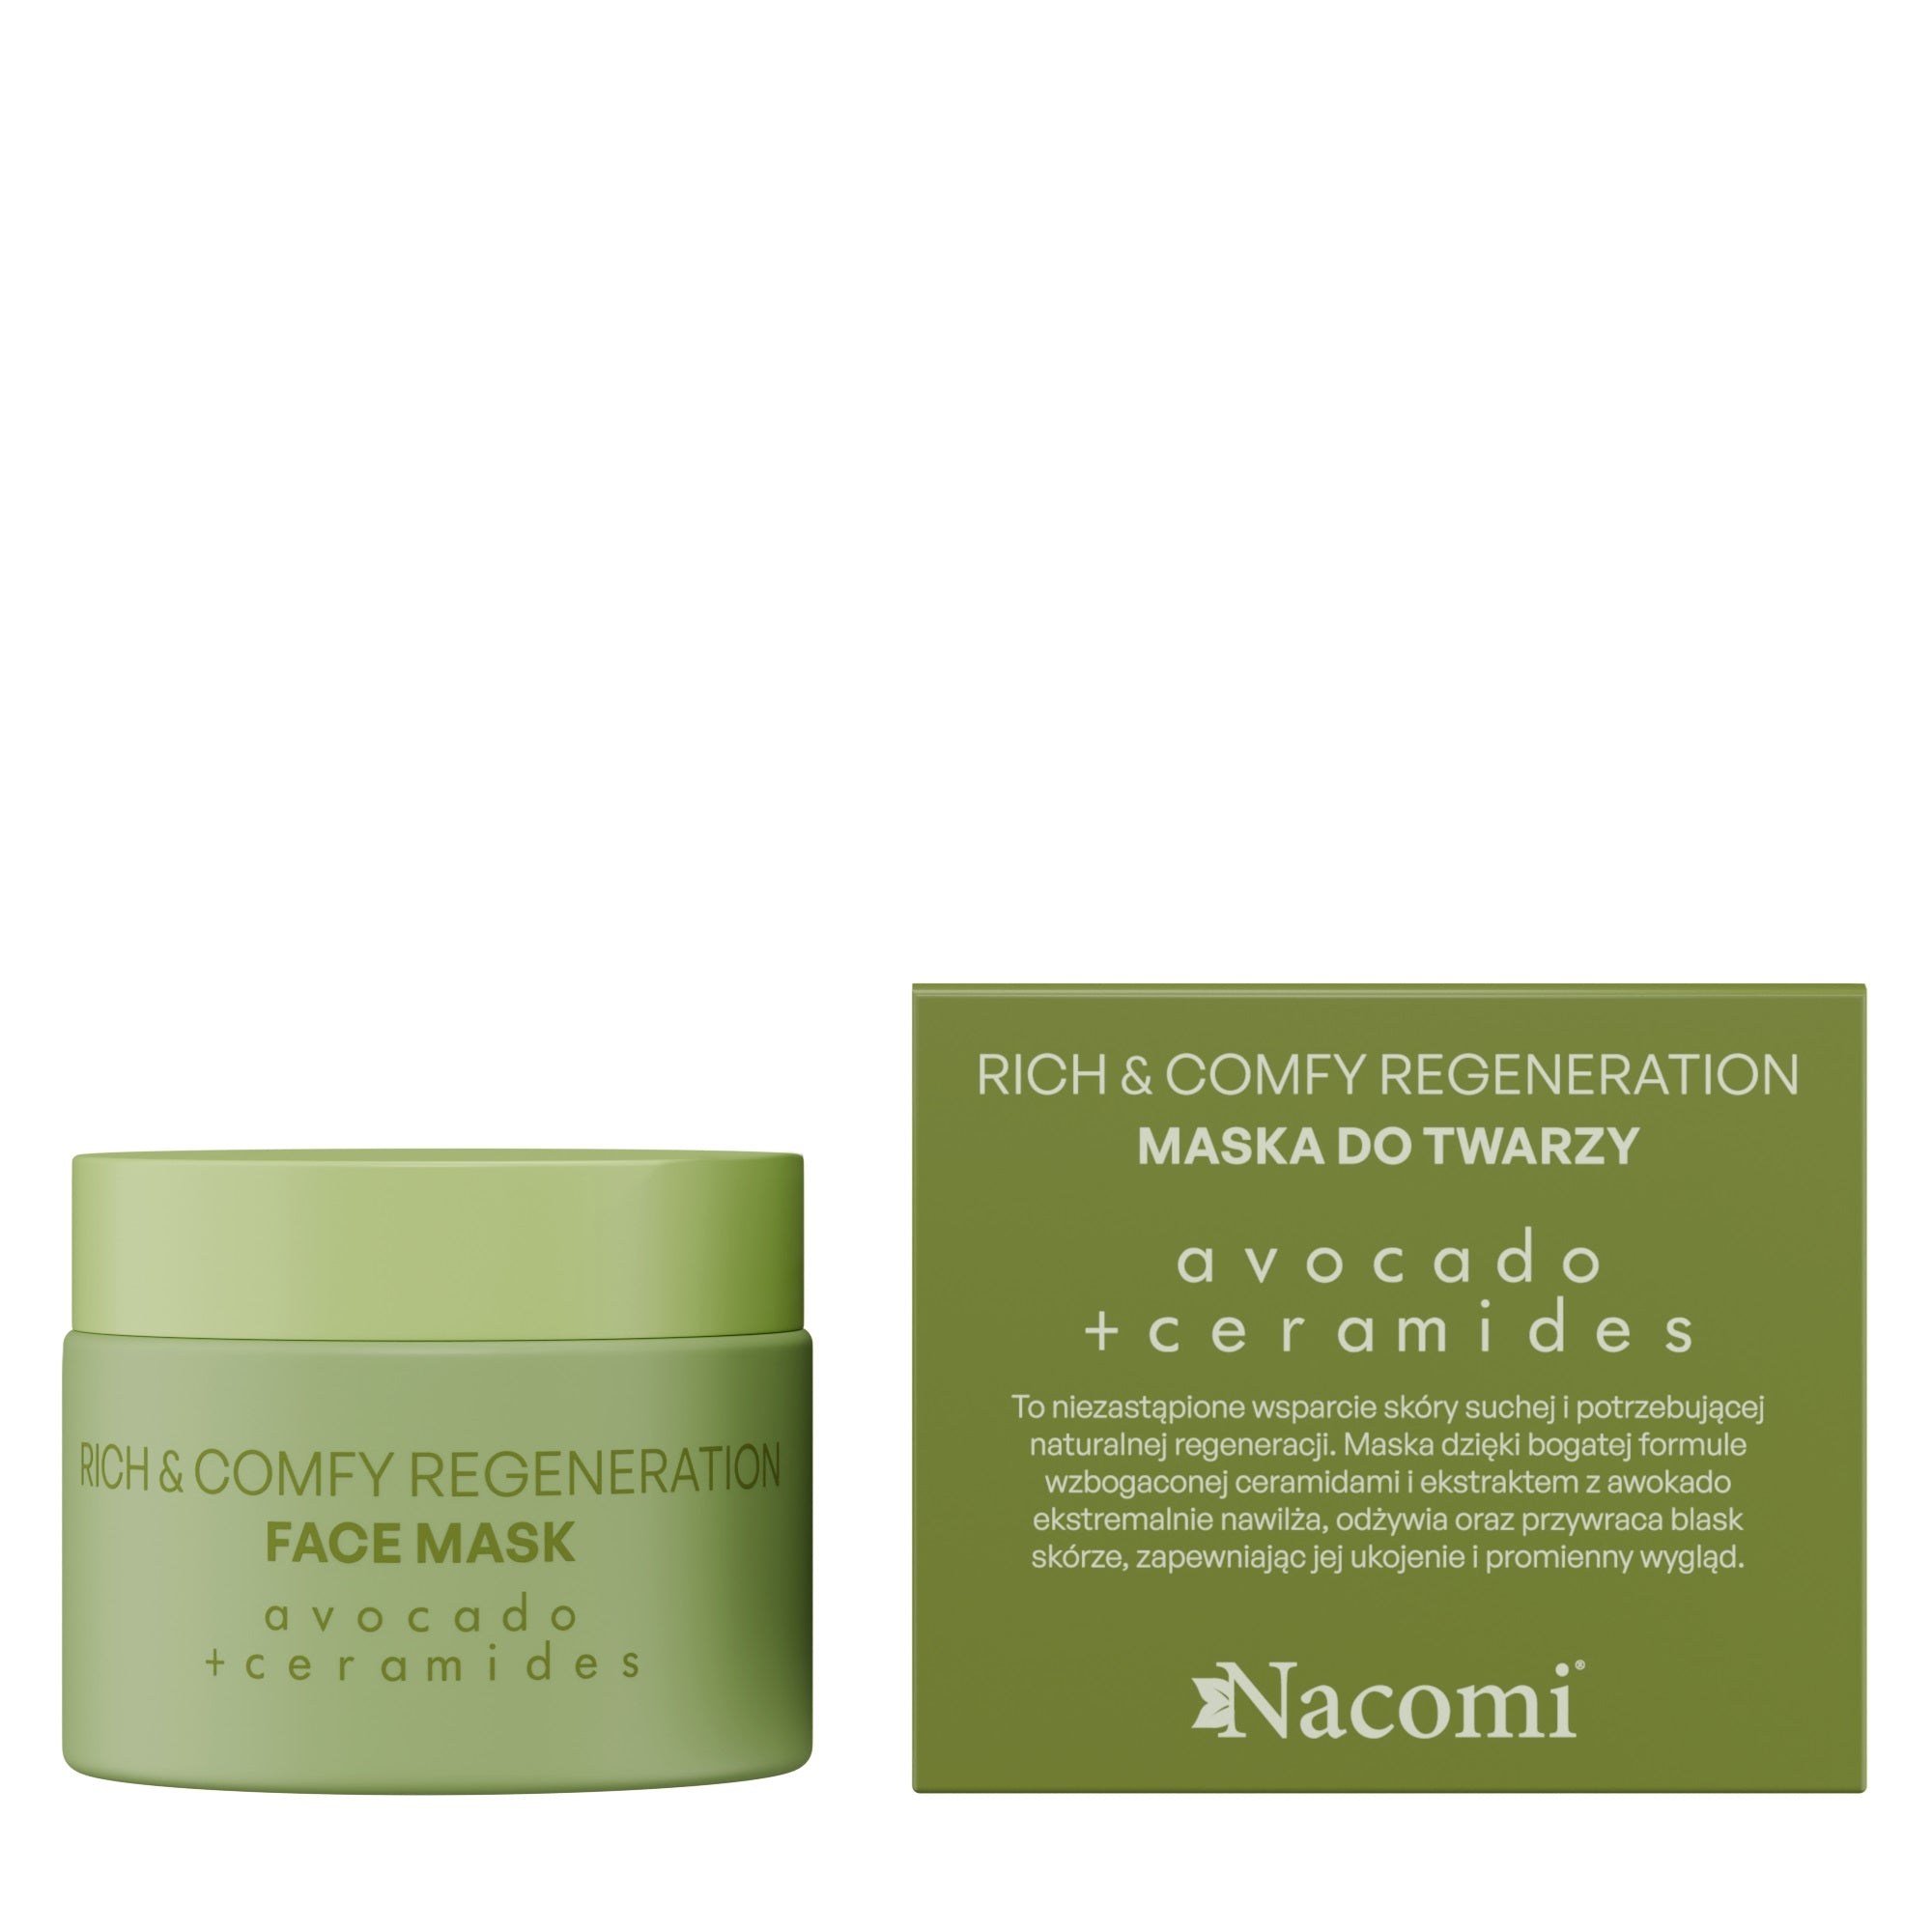 Nacomi Rich & comfy regeneration AVOCADO + CERAMIDES  Face Mask  40ml